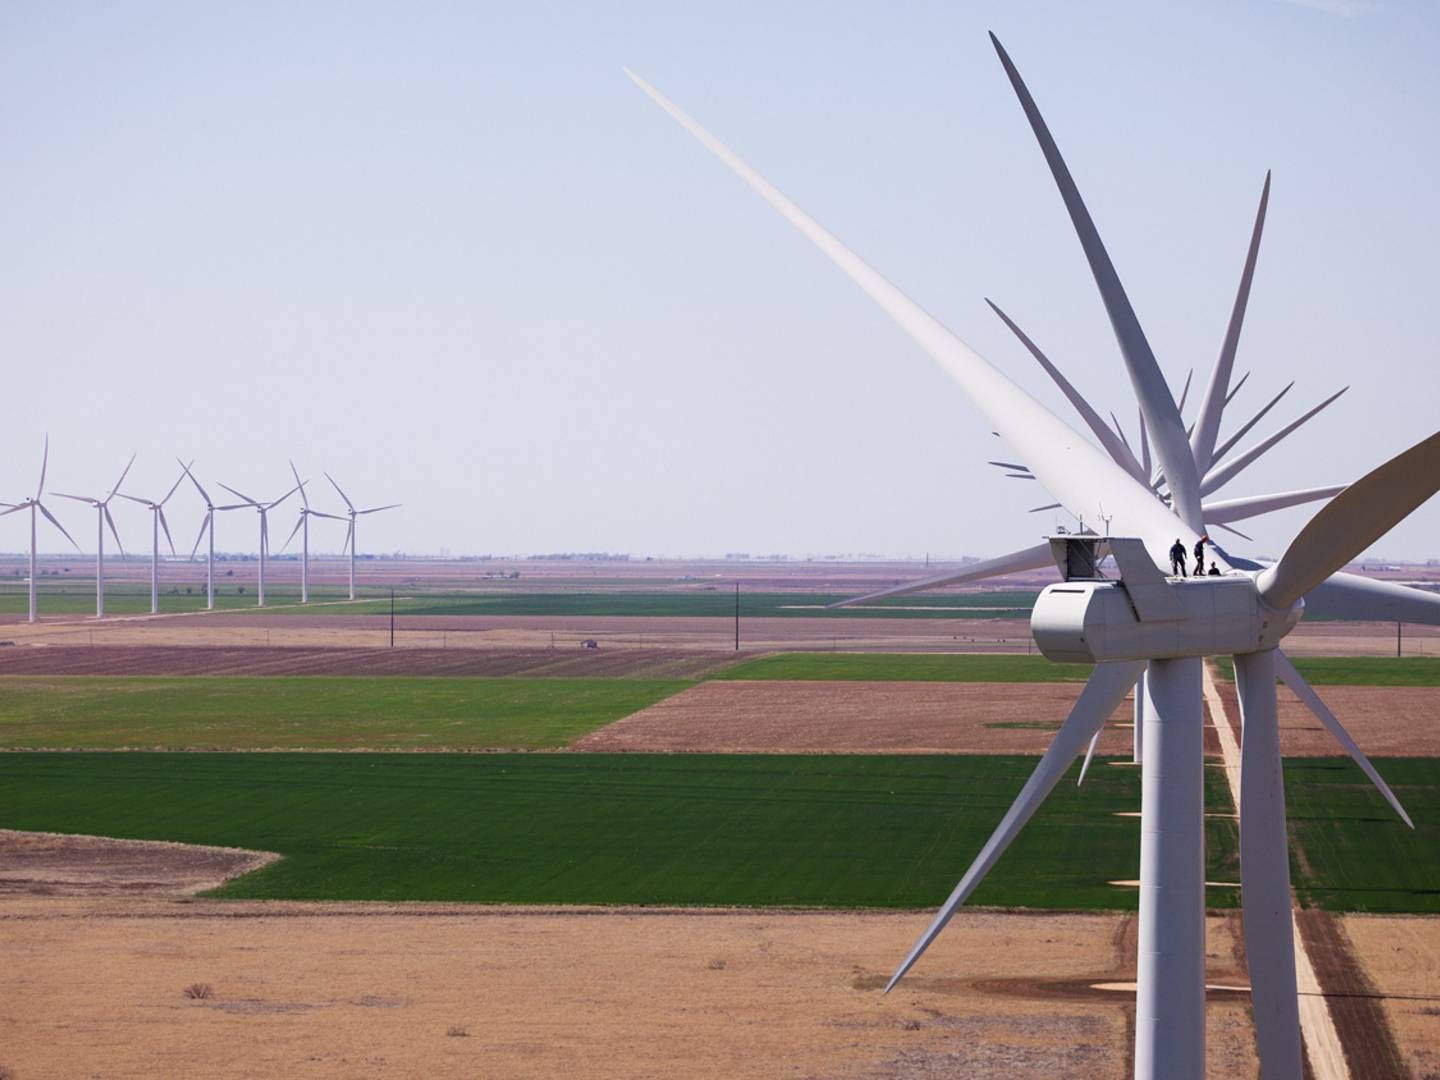 Janikowo skal opføres med V100-2.0 møller fra Vestas, som her ses på en amerikansk vindpark. | Foto: Vestas / PR